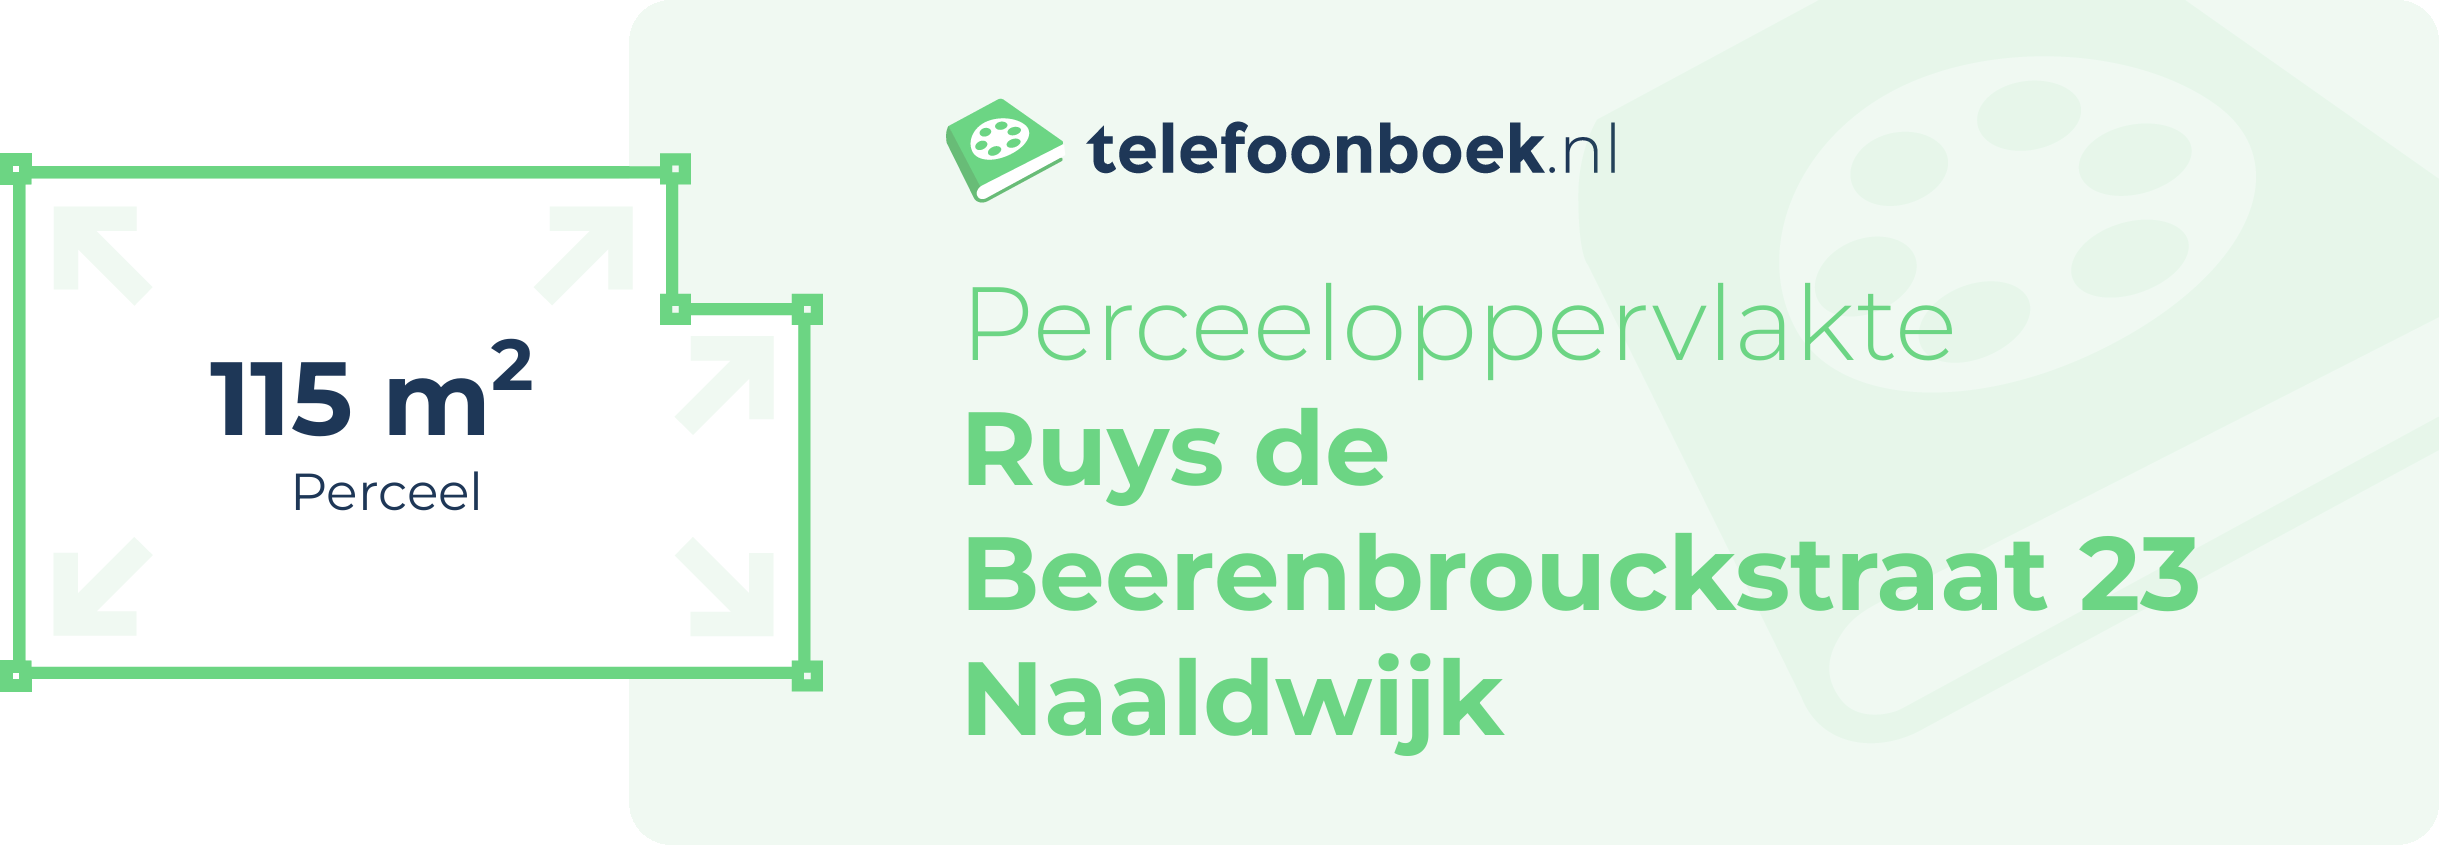 Perceeloppervlakte Ruys De Beerenbrouckstraat 23 Naaldwijk